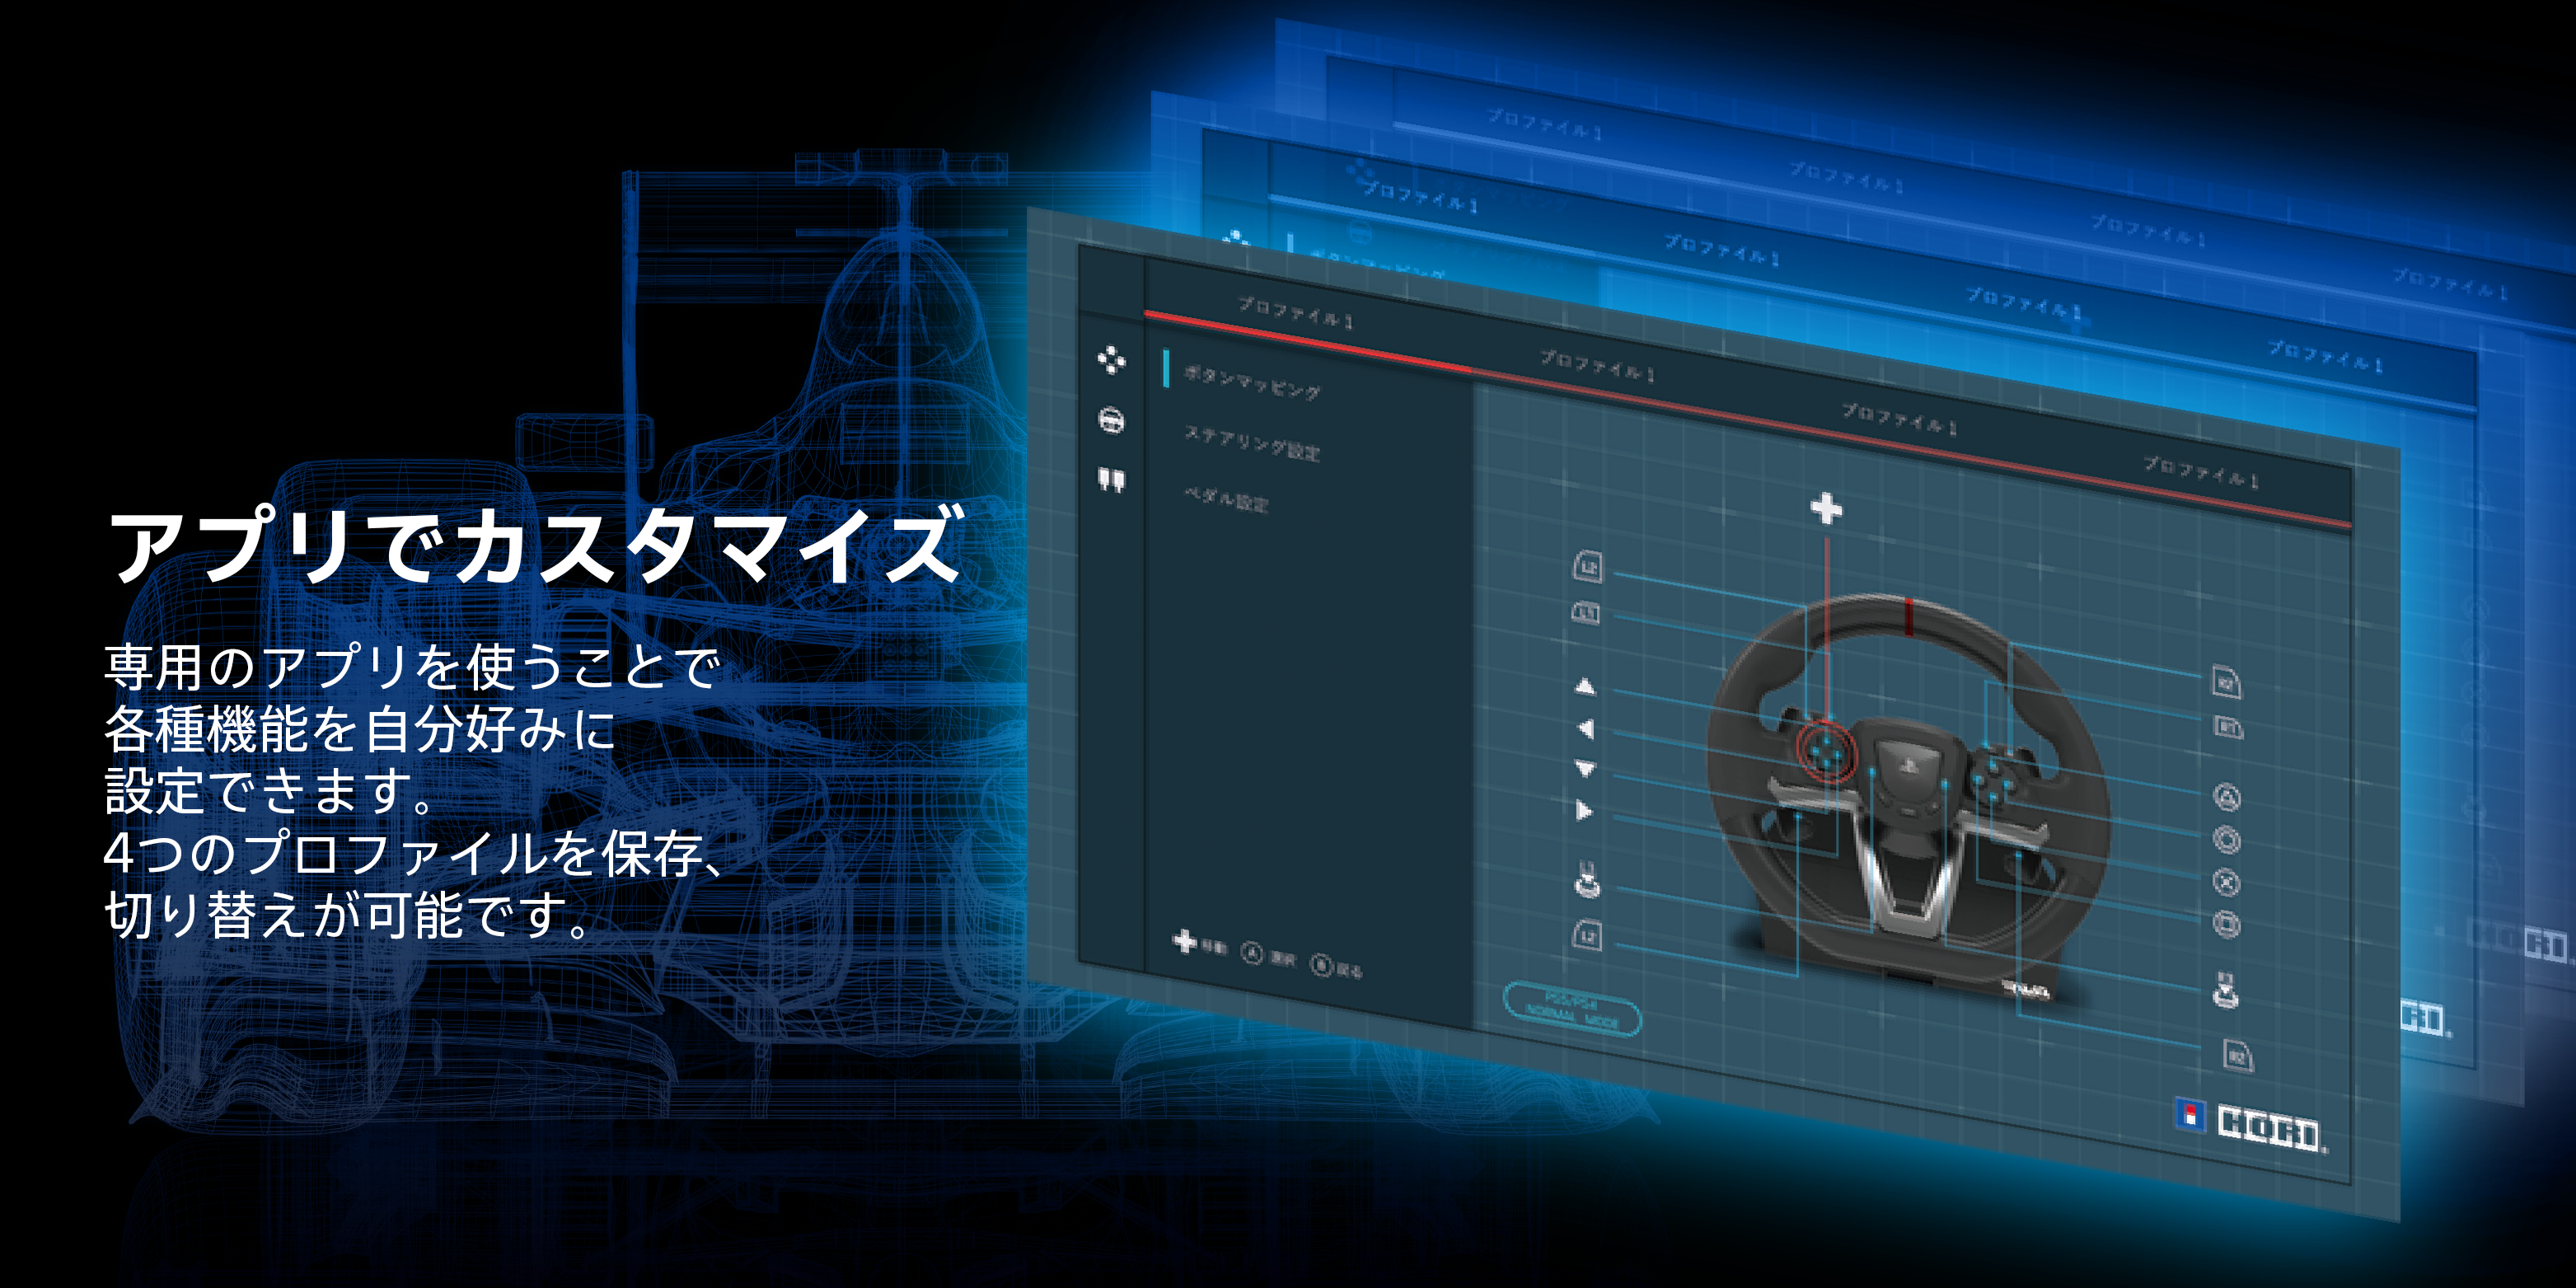 株式会社 HORI | レーシングホイールエイペックス for PlayStation®5 